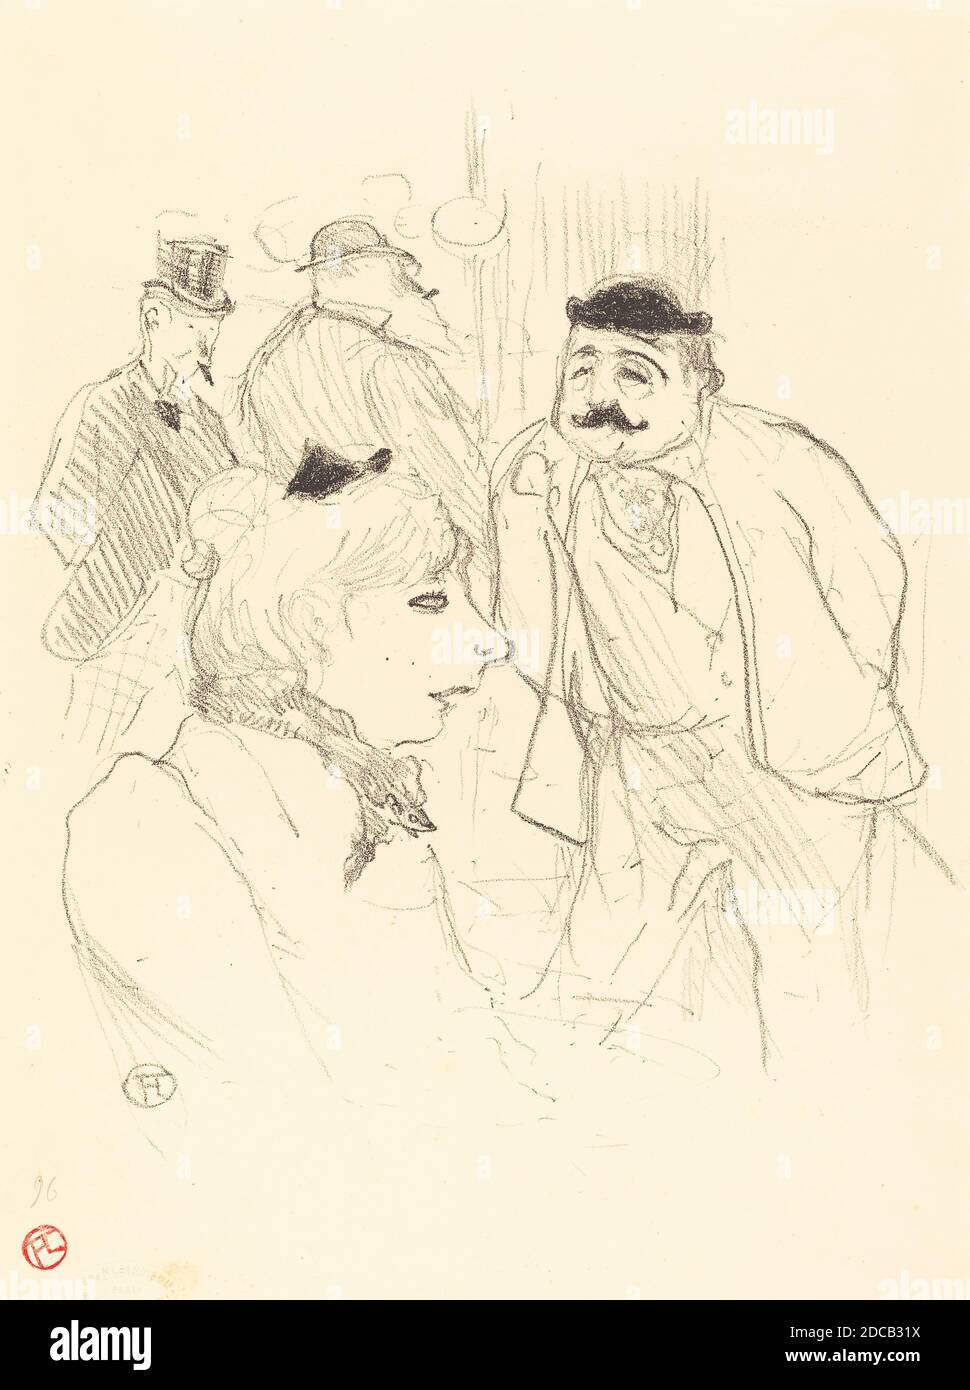 Henri de Toulouse-Lautrec, (artiste), français, 1864 - 1901, la Tige (Moulin-Rouge), 1894, lithographie en noir sur papier velin Banque D'Images